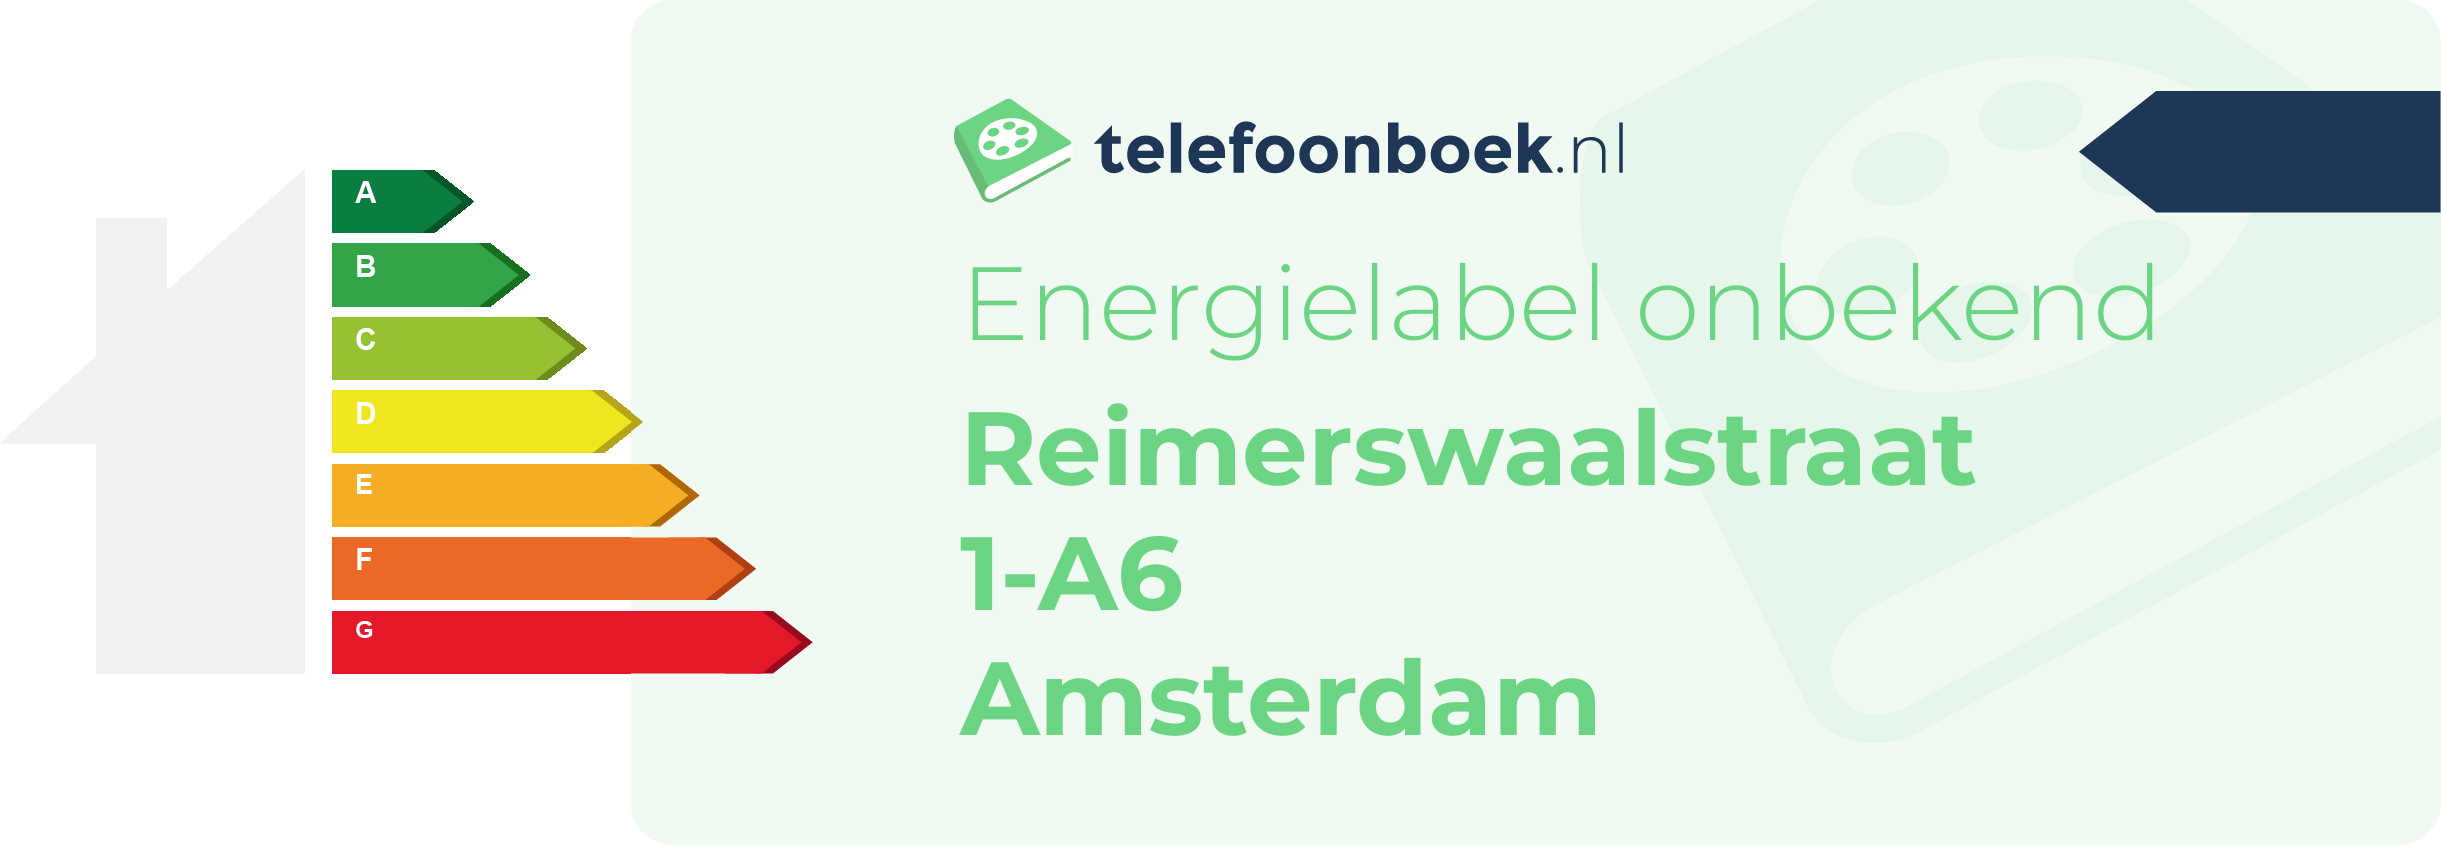 Energielabel Reimerswaalstraat 1-A6 Amsterdam